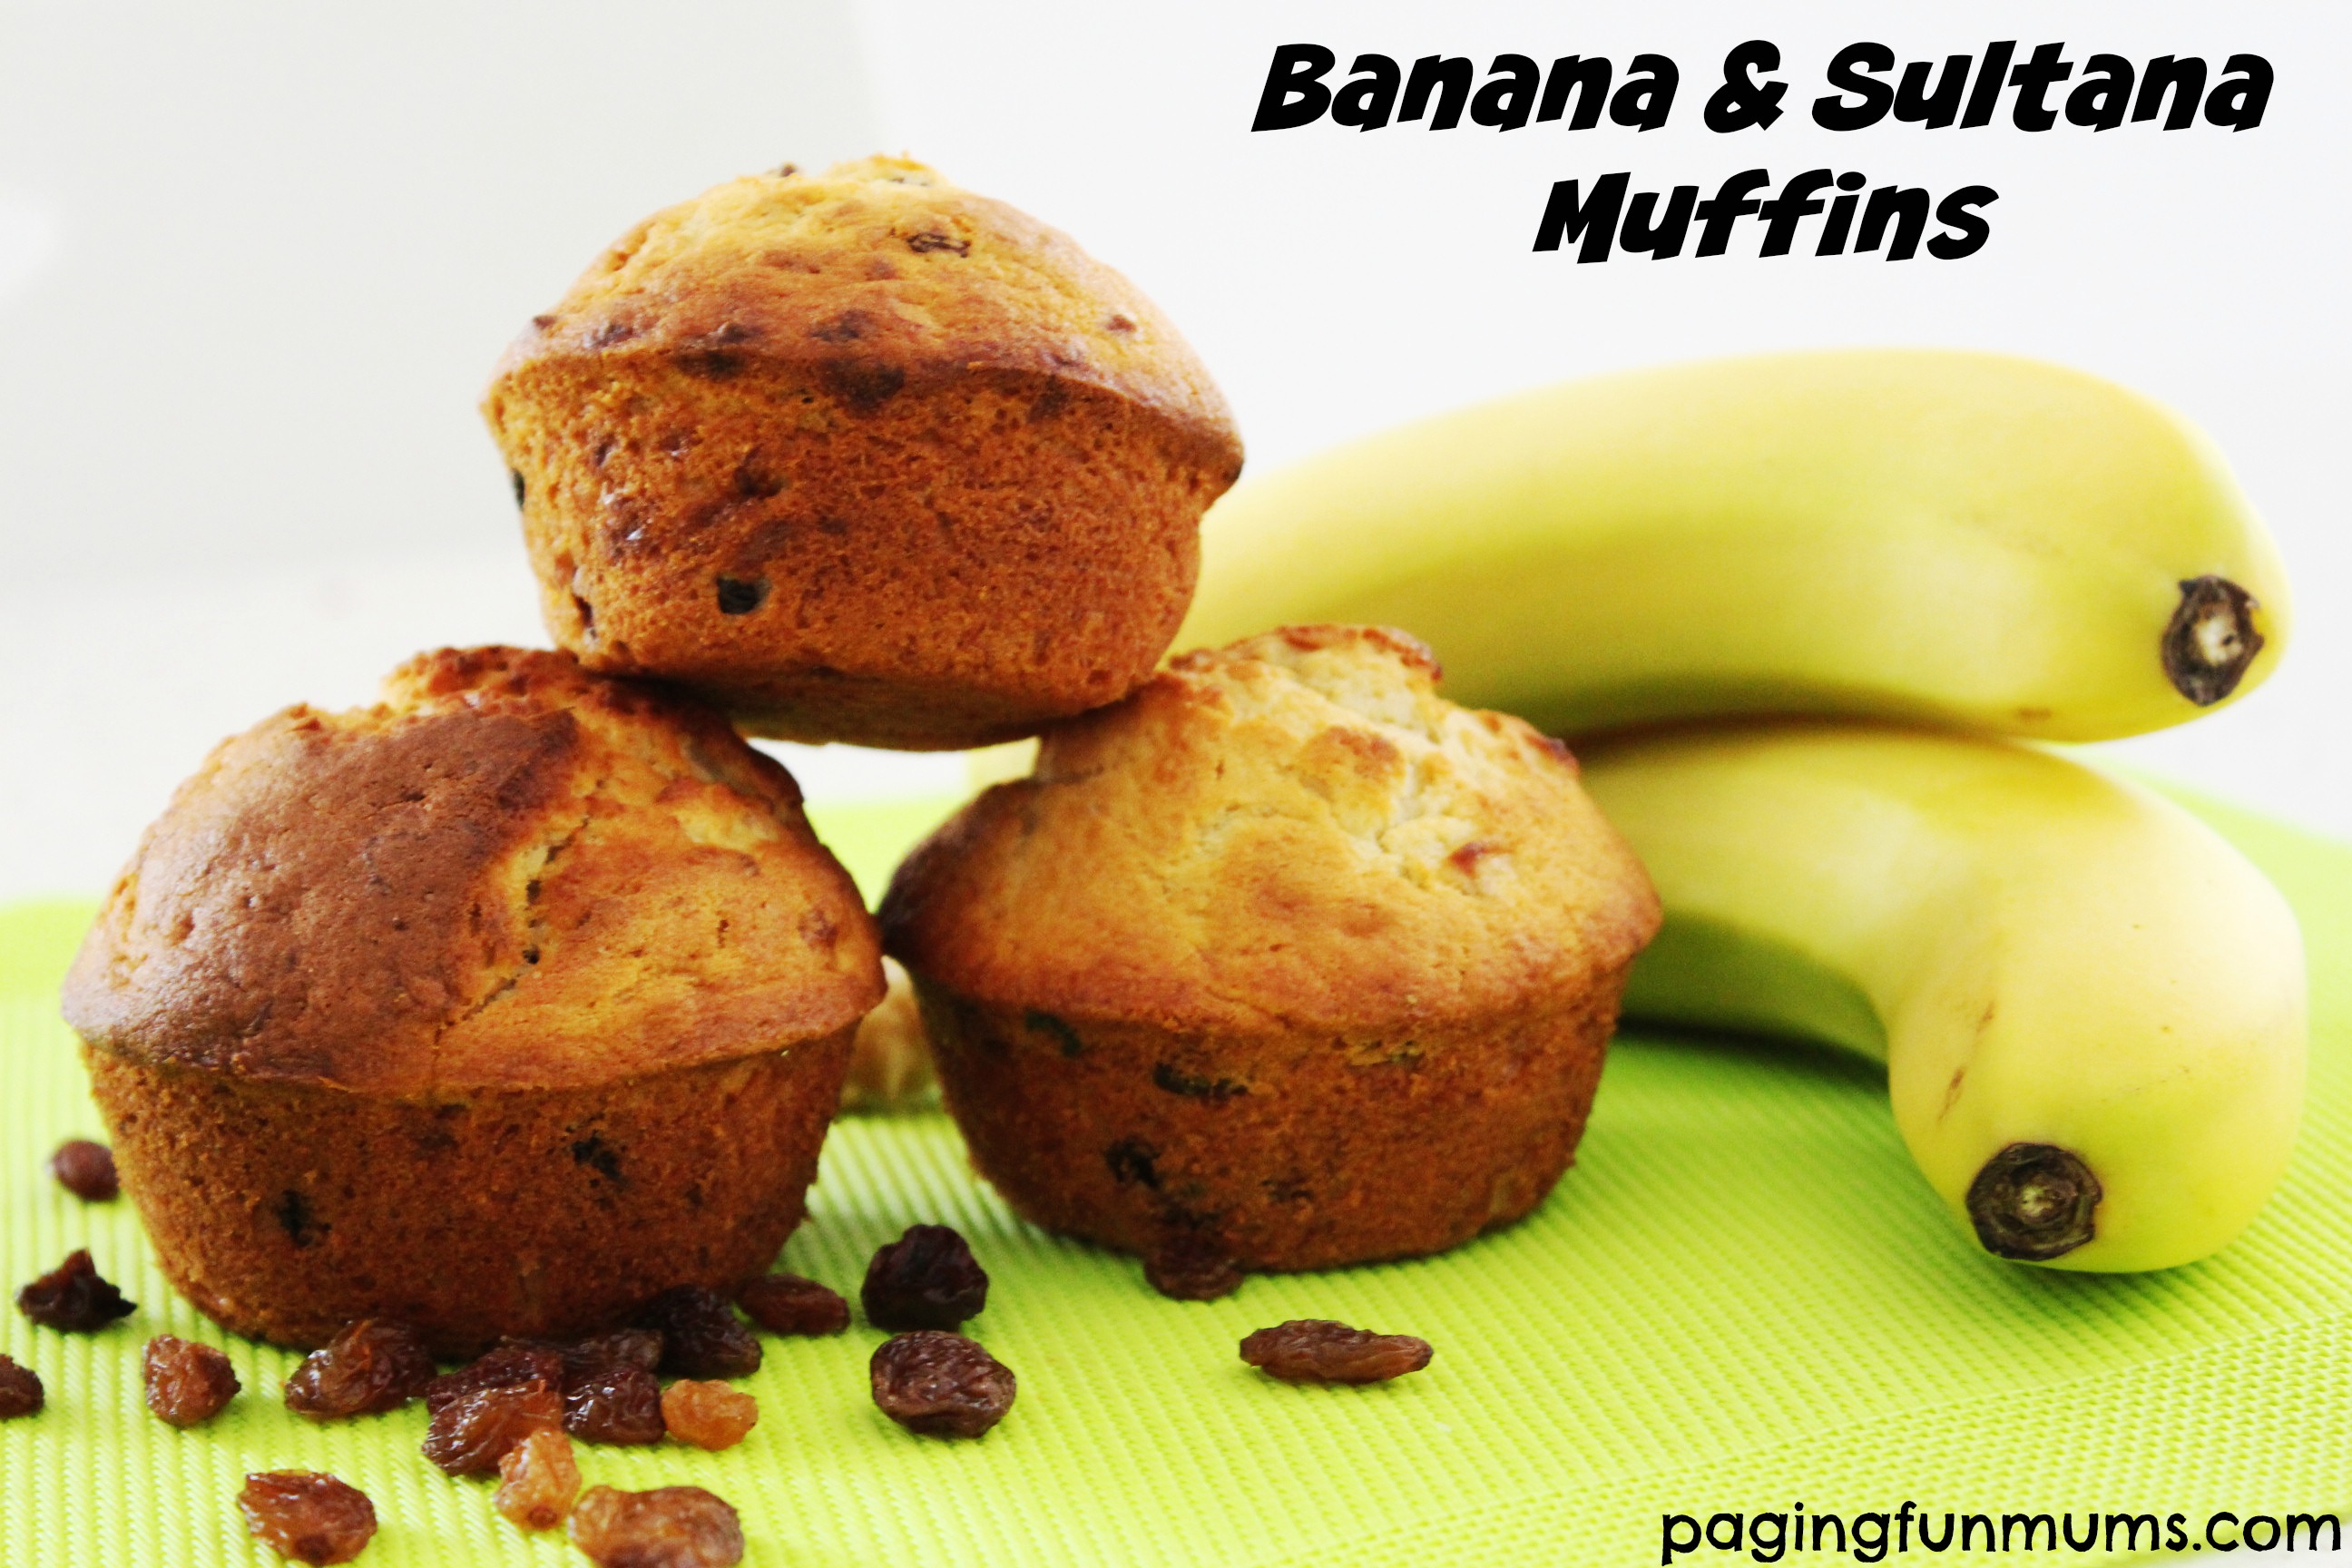 Banana & Sultana Muffins..